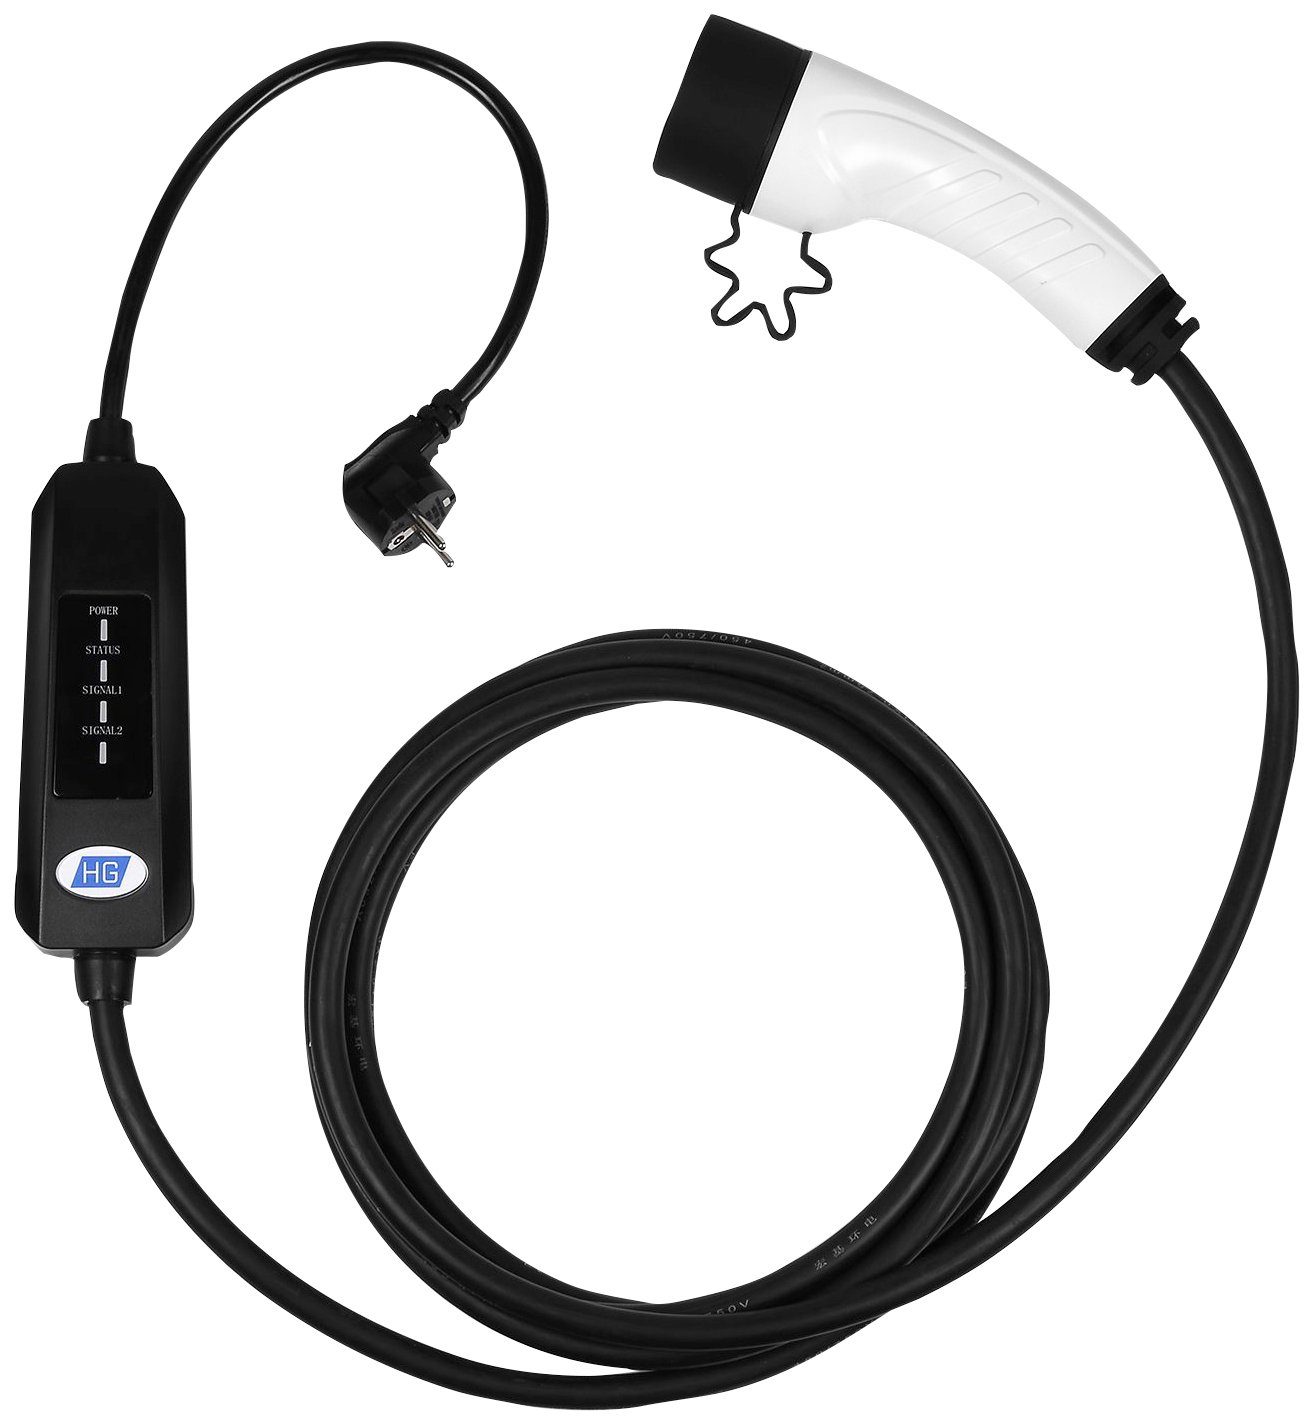 E-Auto Ladekabel für Steckdosen